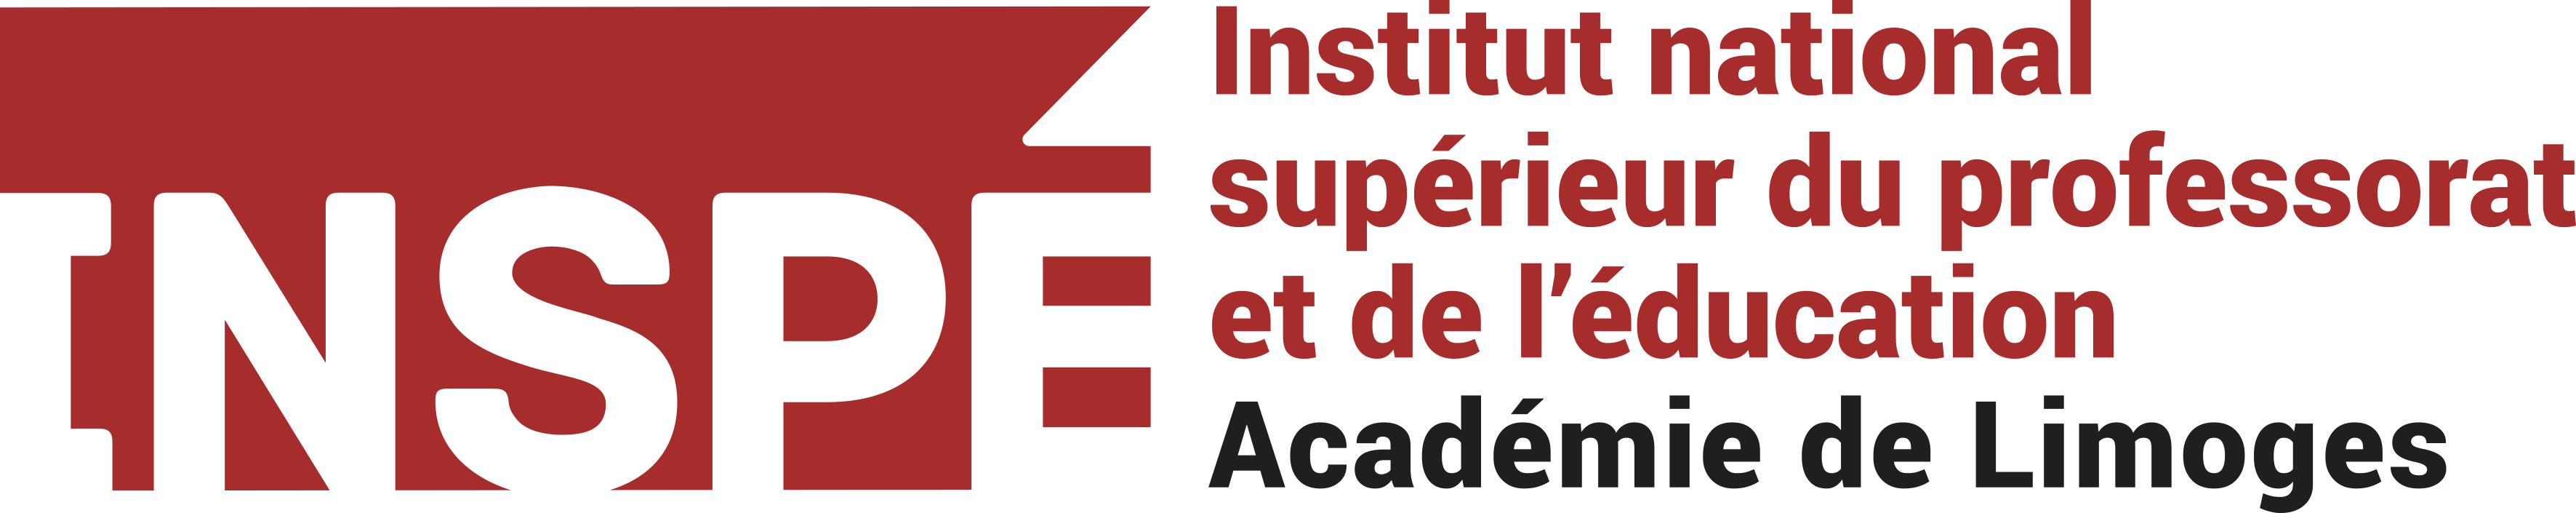 INSPE de l'Académie de Limoges